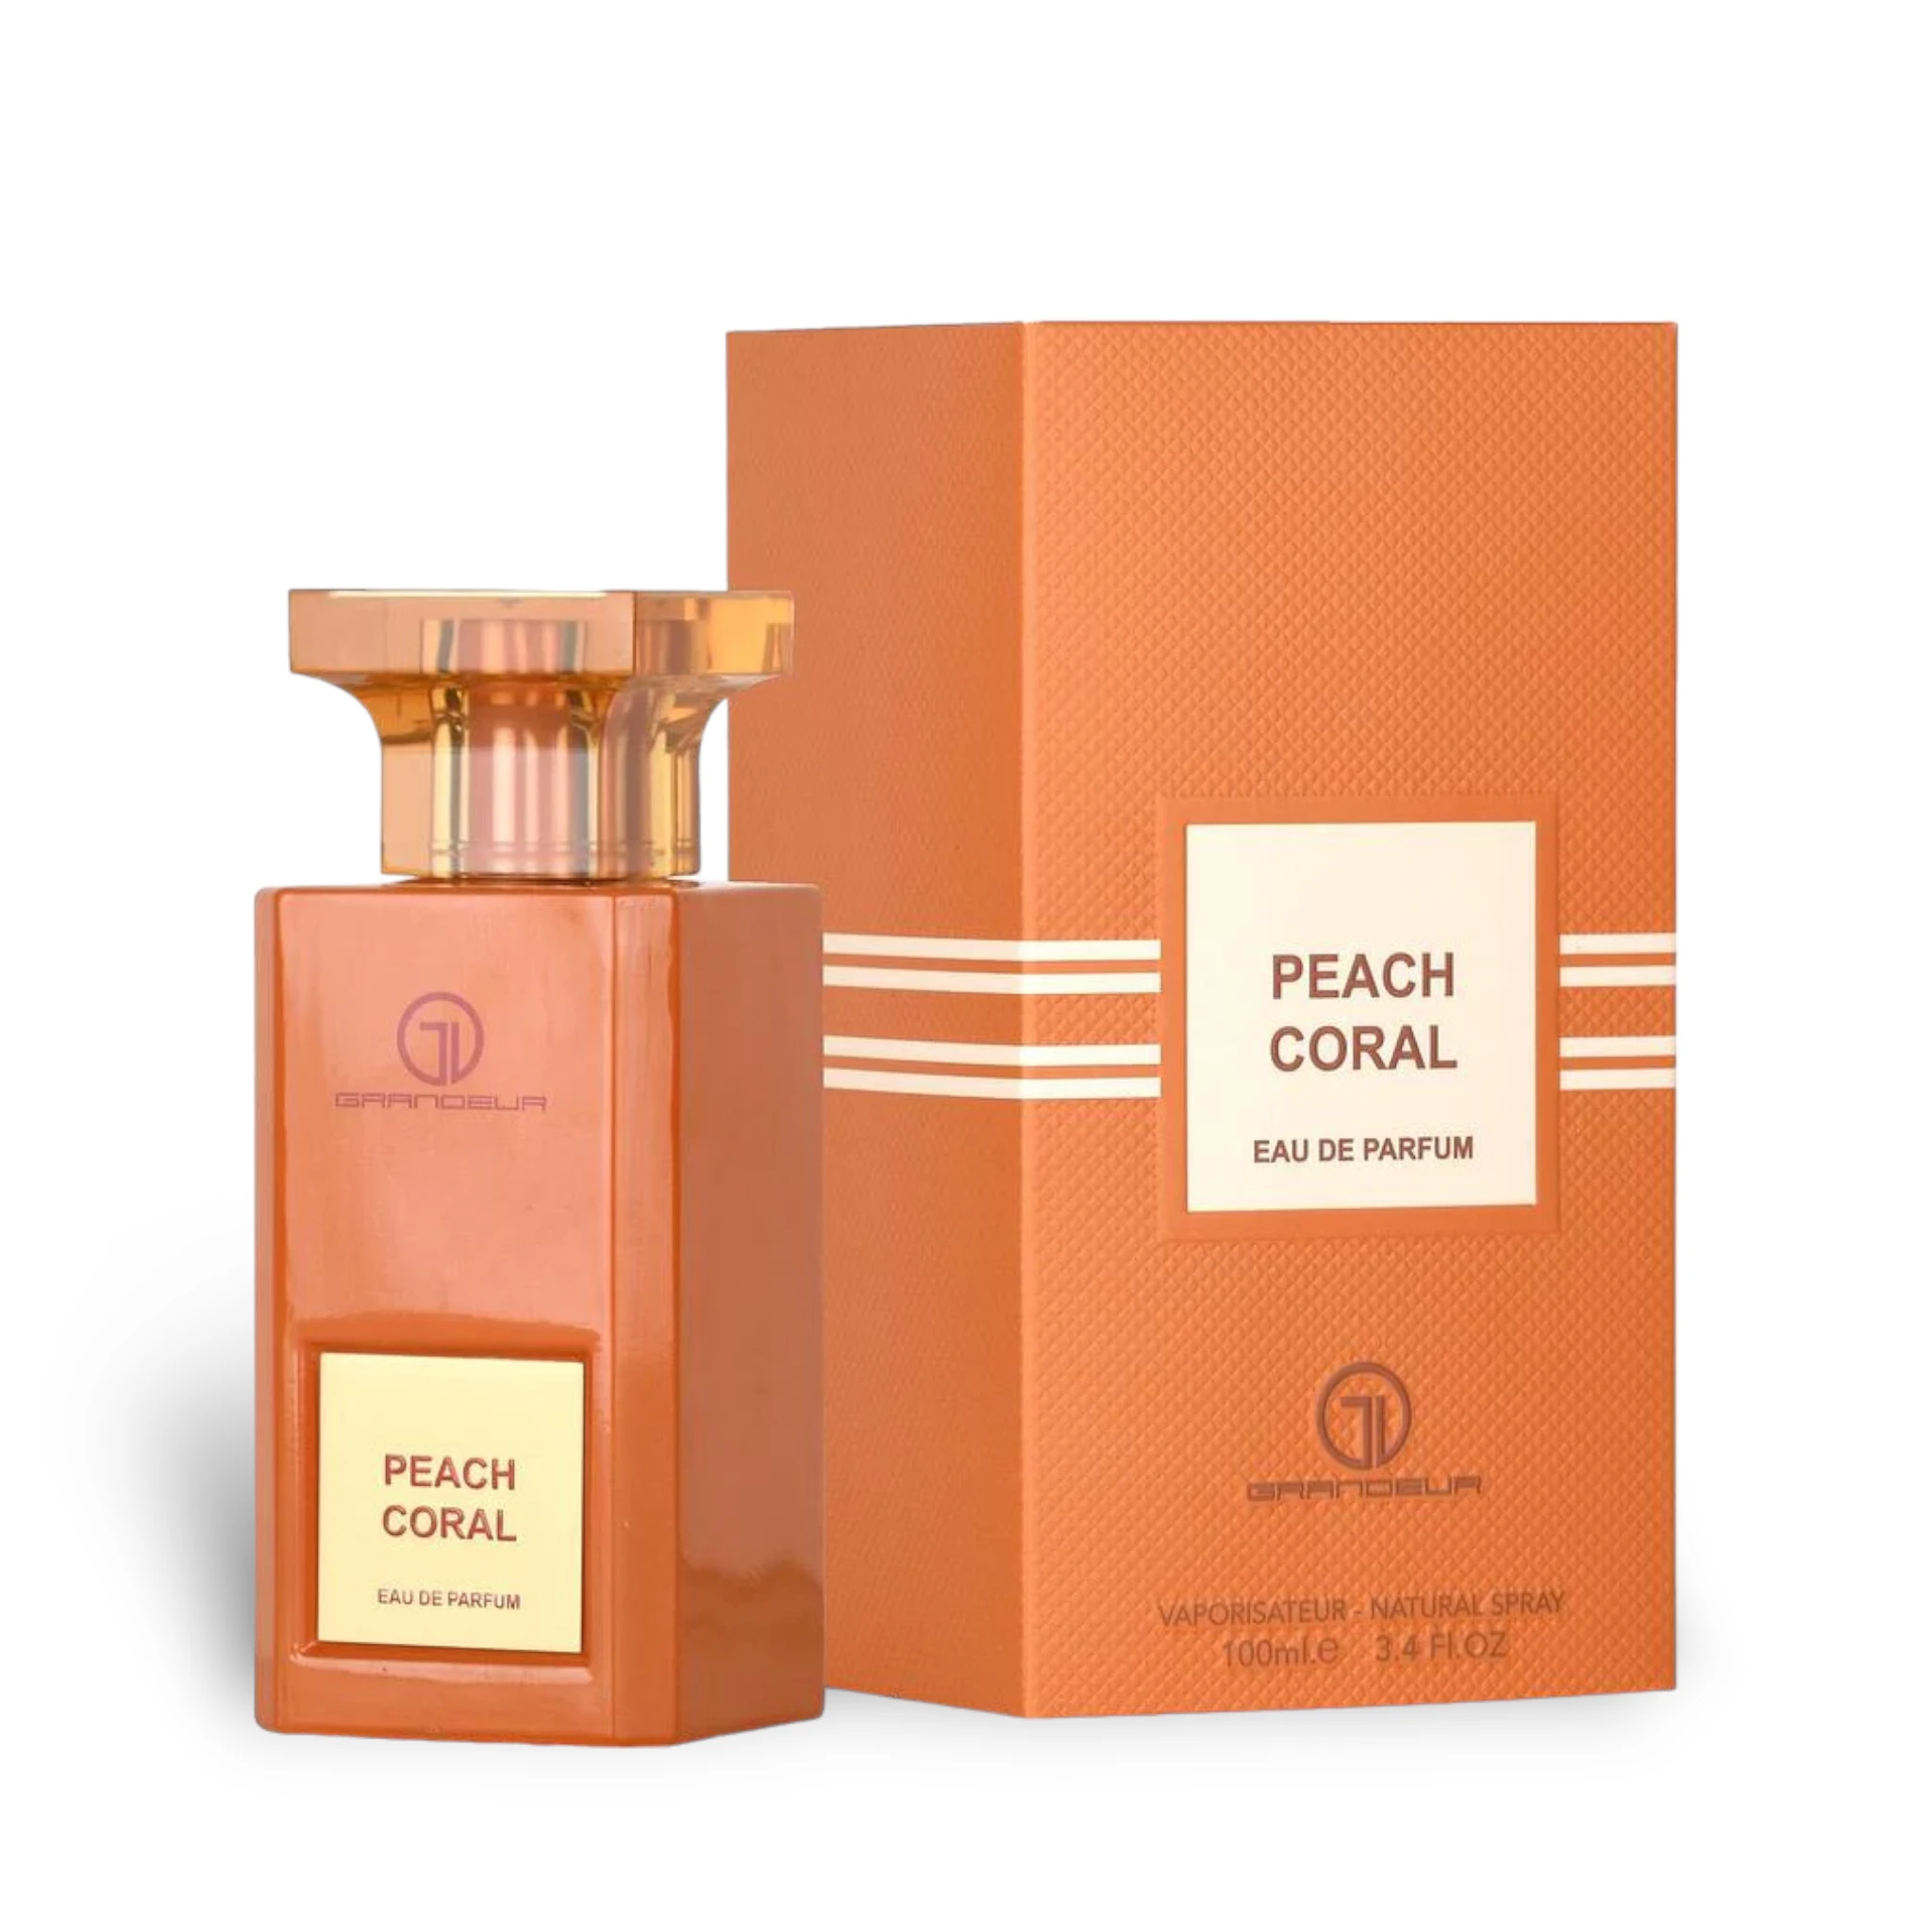 Peach Coral Perfume Eau De Parfum 100Ml By Grandeur